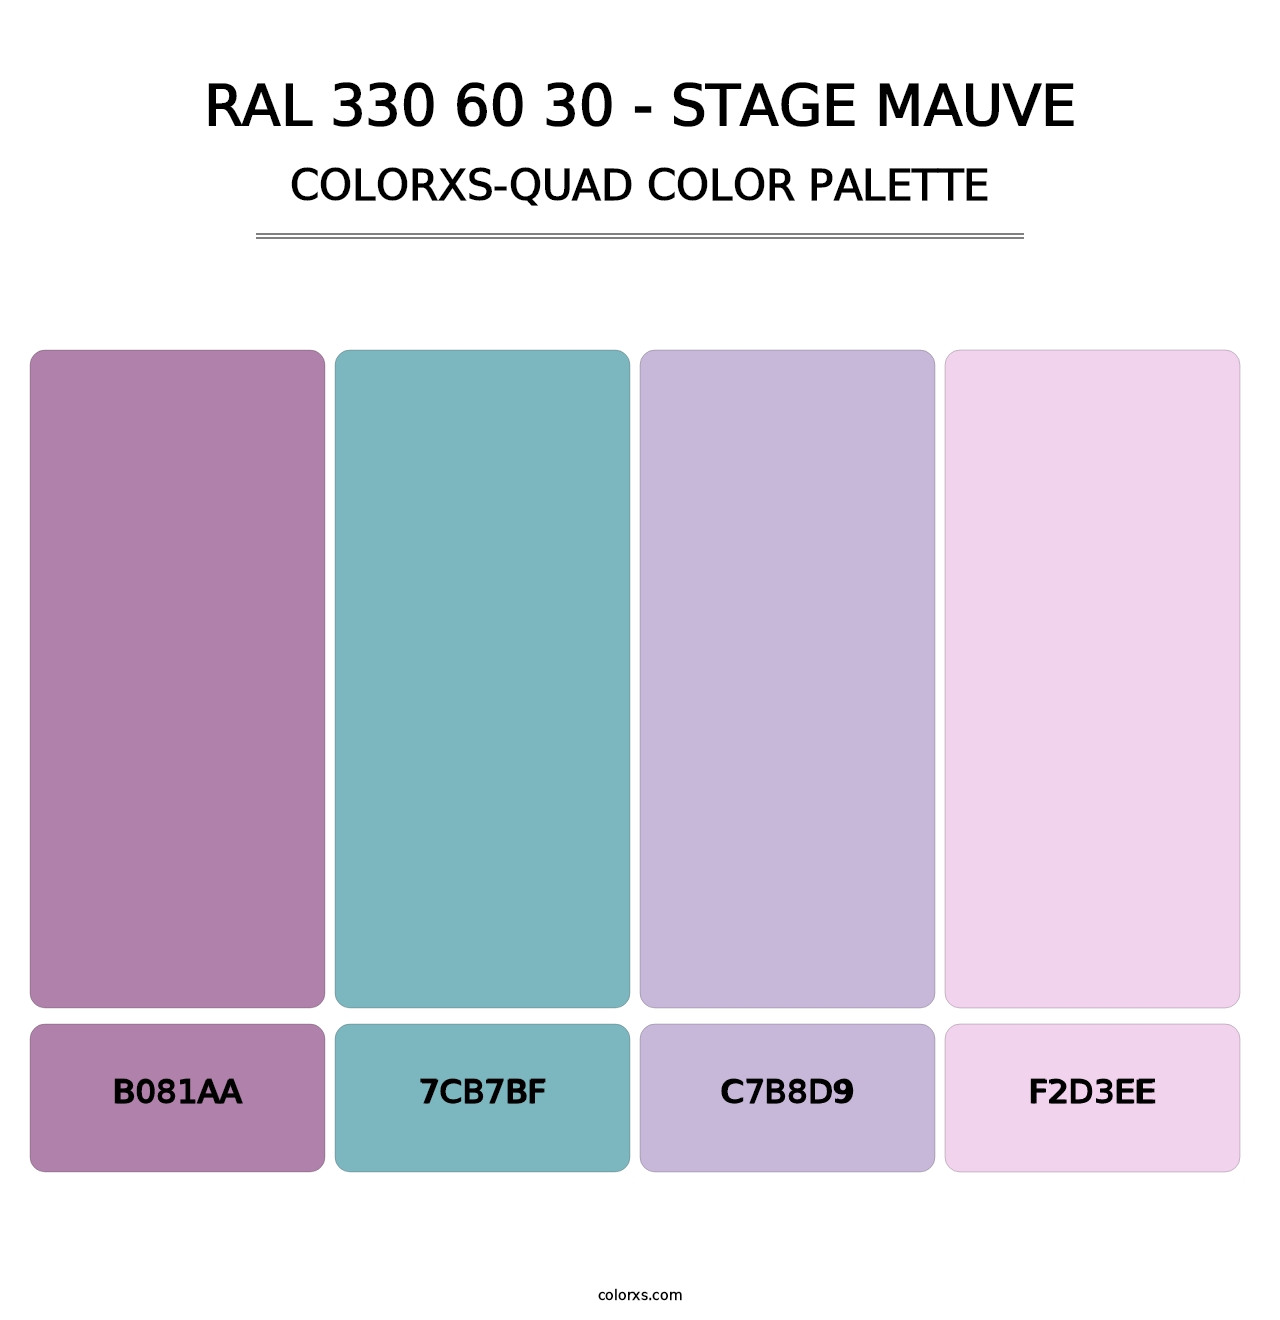 RAL 330 60 30 - Stage Mauve - Colorxs Quad Palette